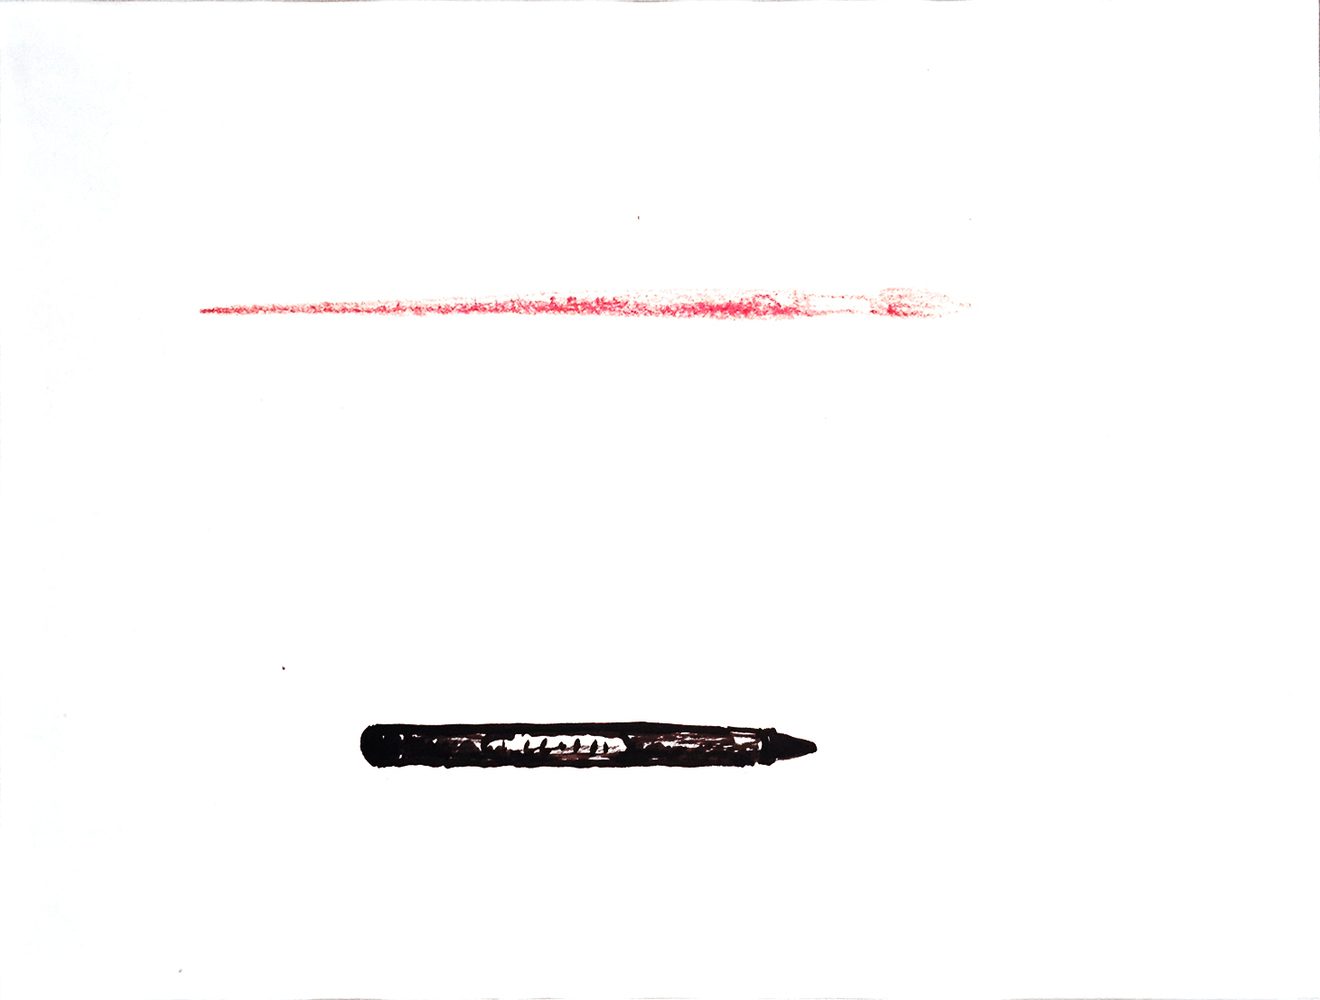 Crayon-brush, 1974